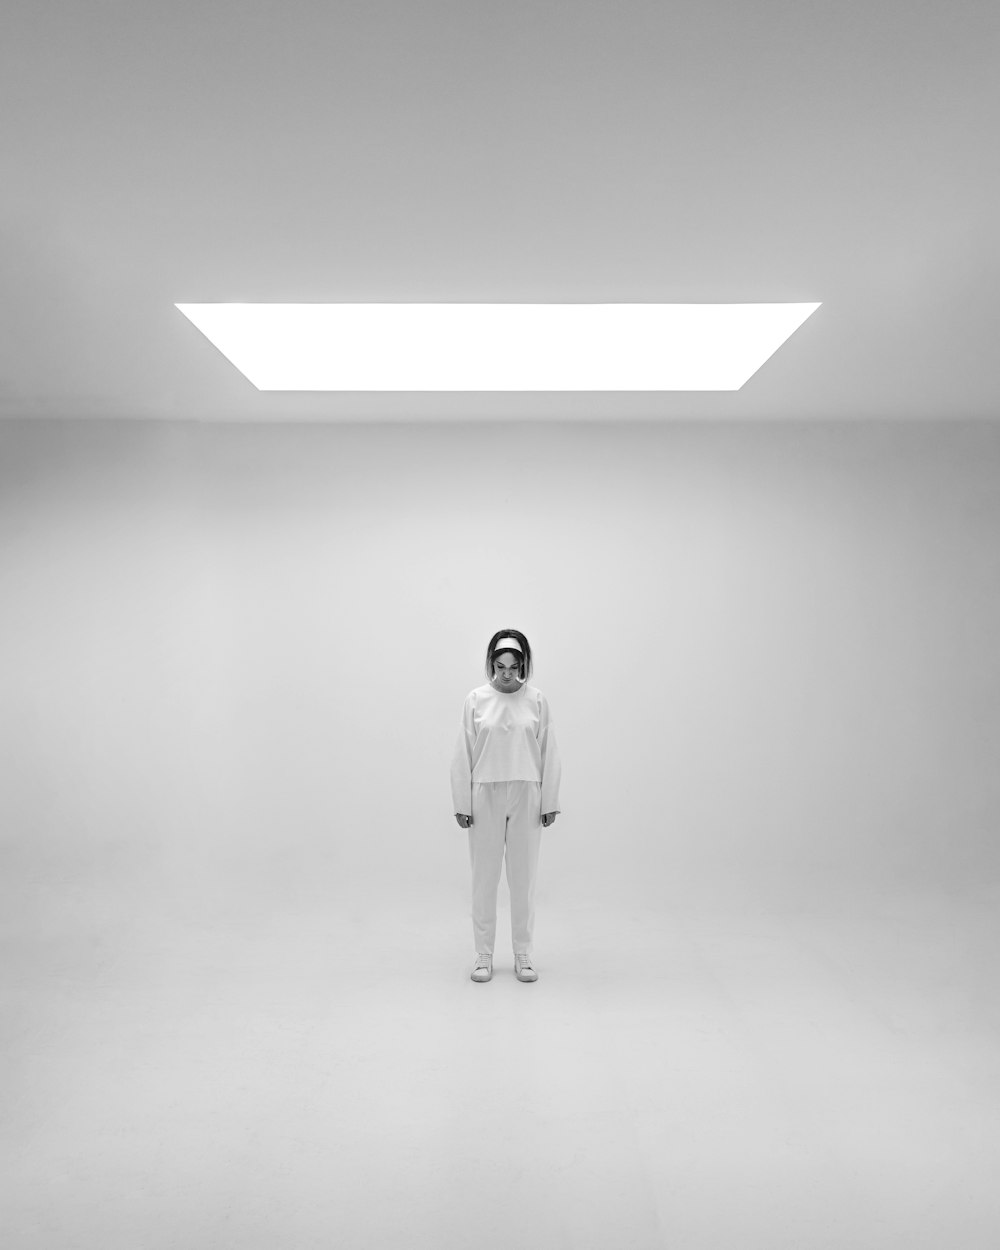 Ein Mann in einem weißen Anzug steht in einem Raum